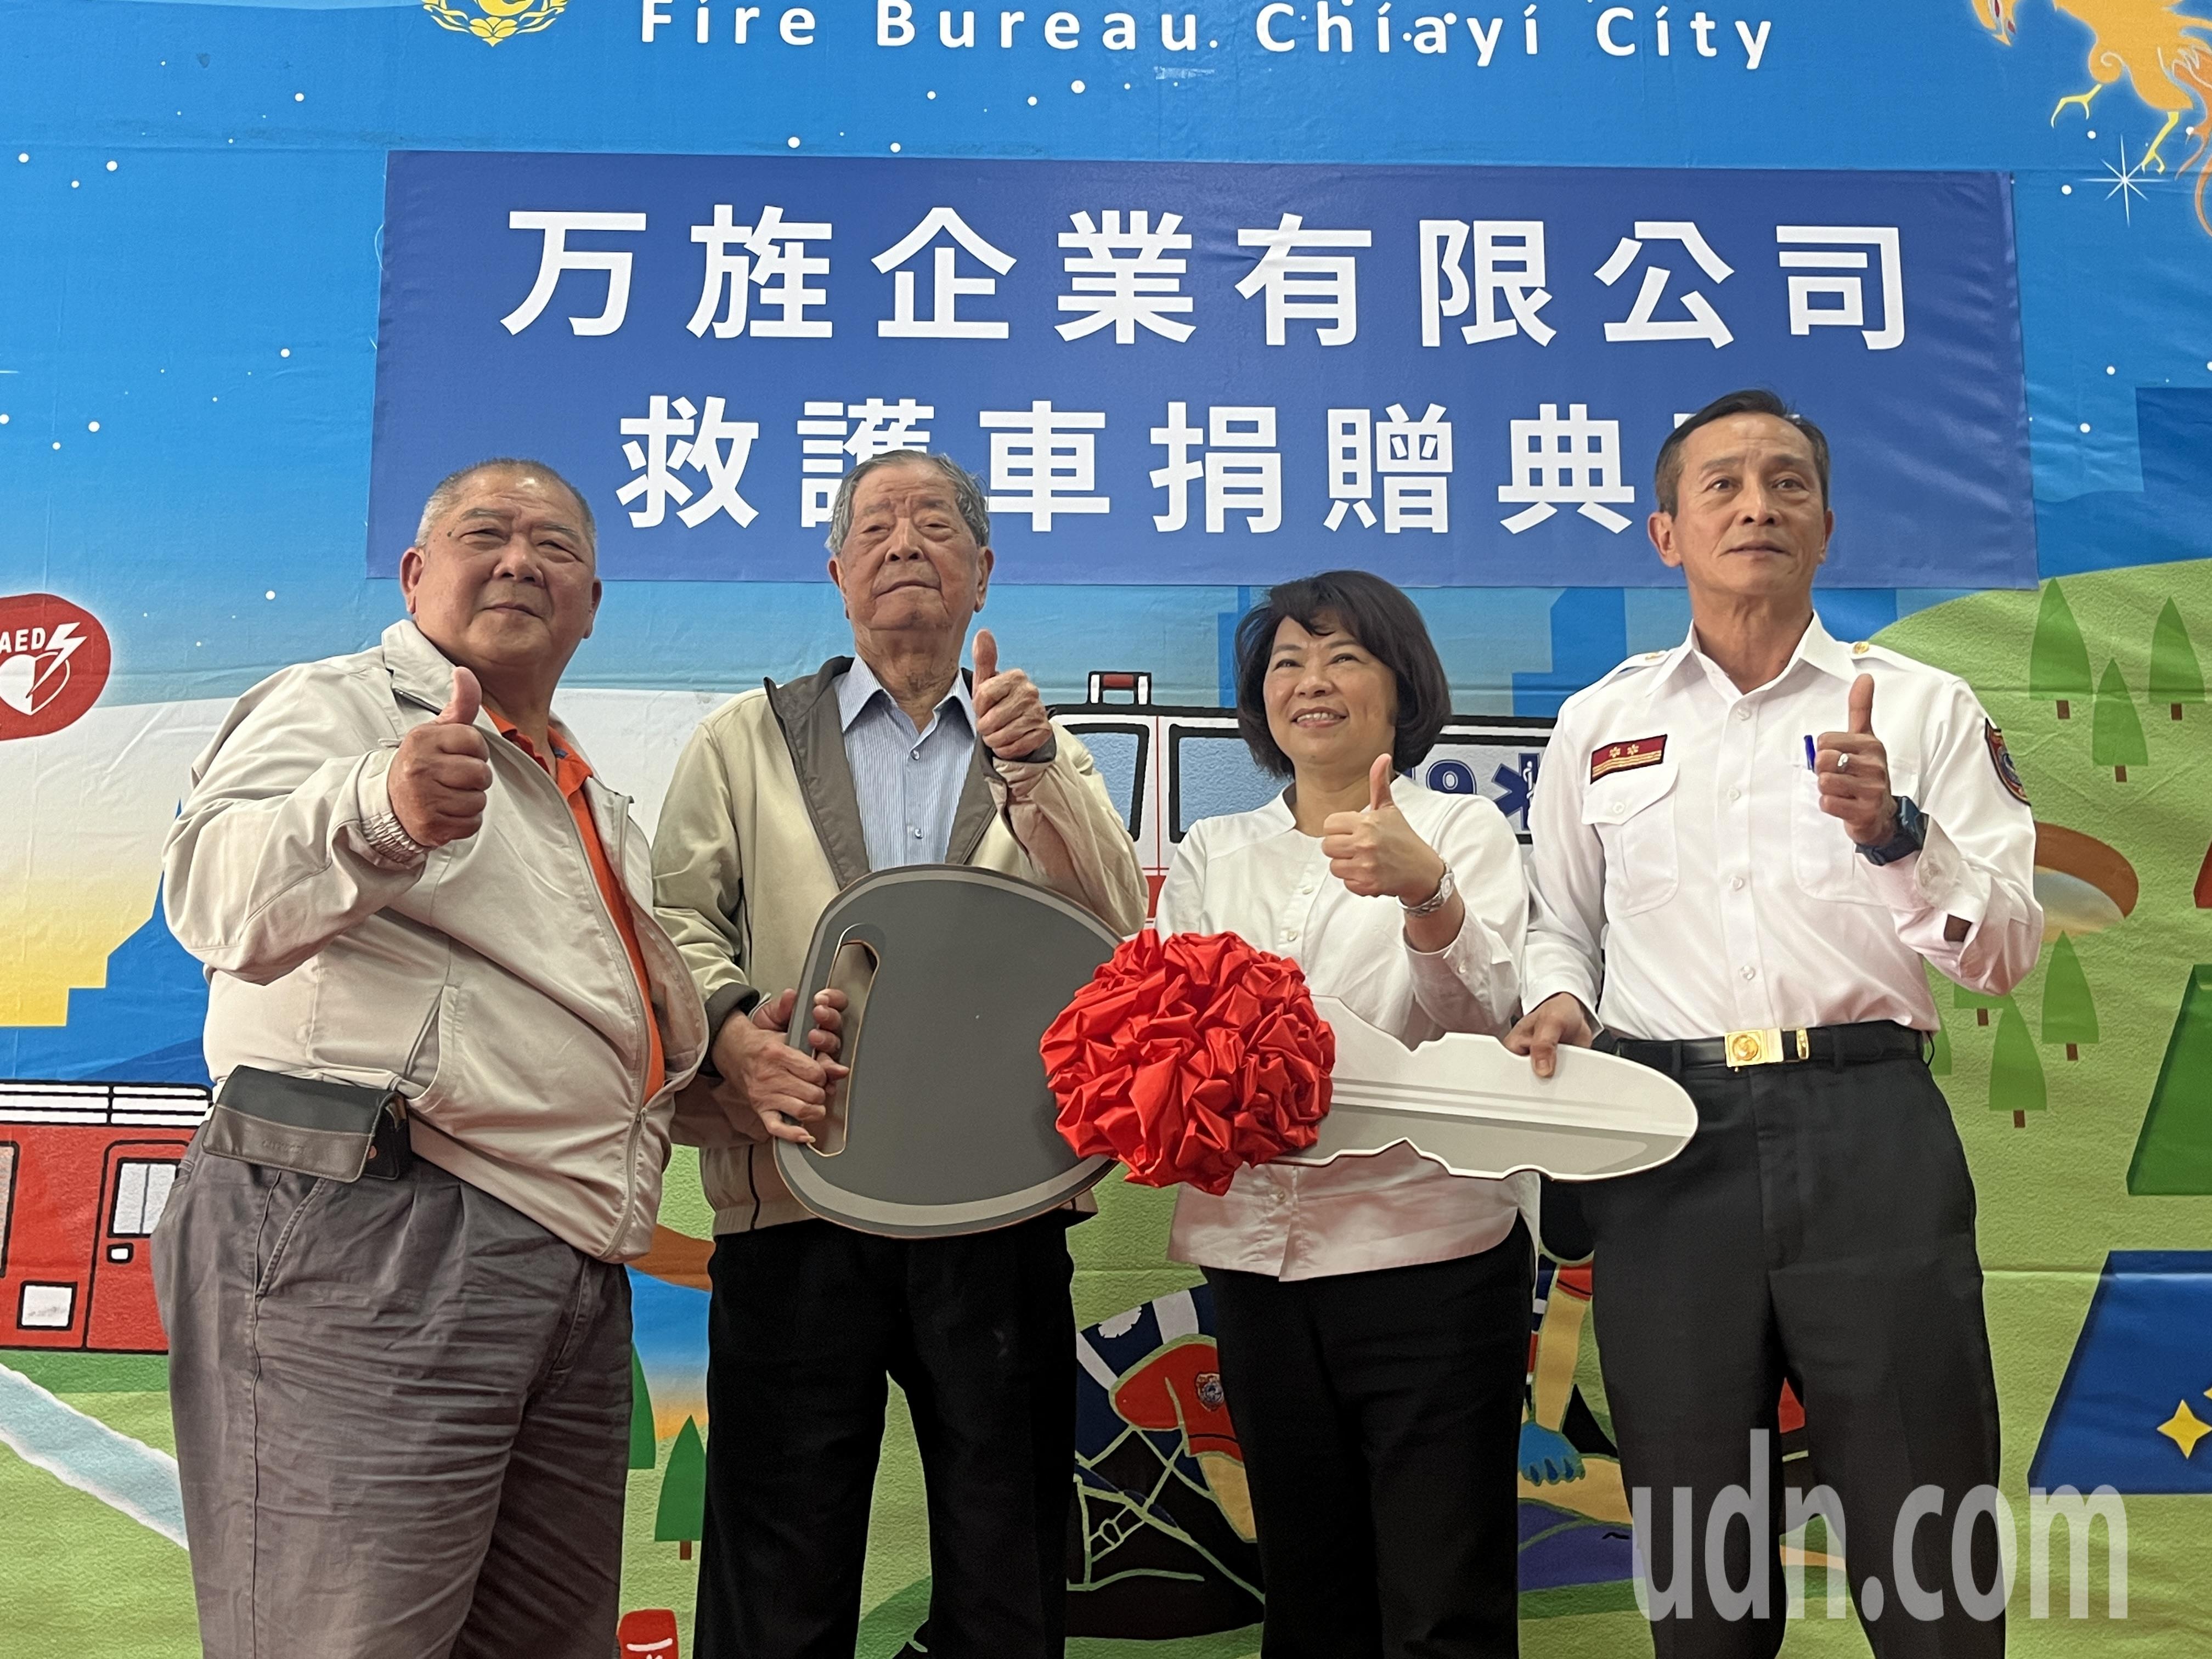 嘉义市善心企业捐赠救护车，由市长黄敏惠（右二）代表受赠。记者李宗祐／摄影